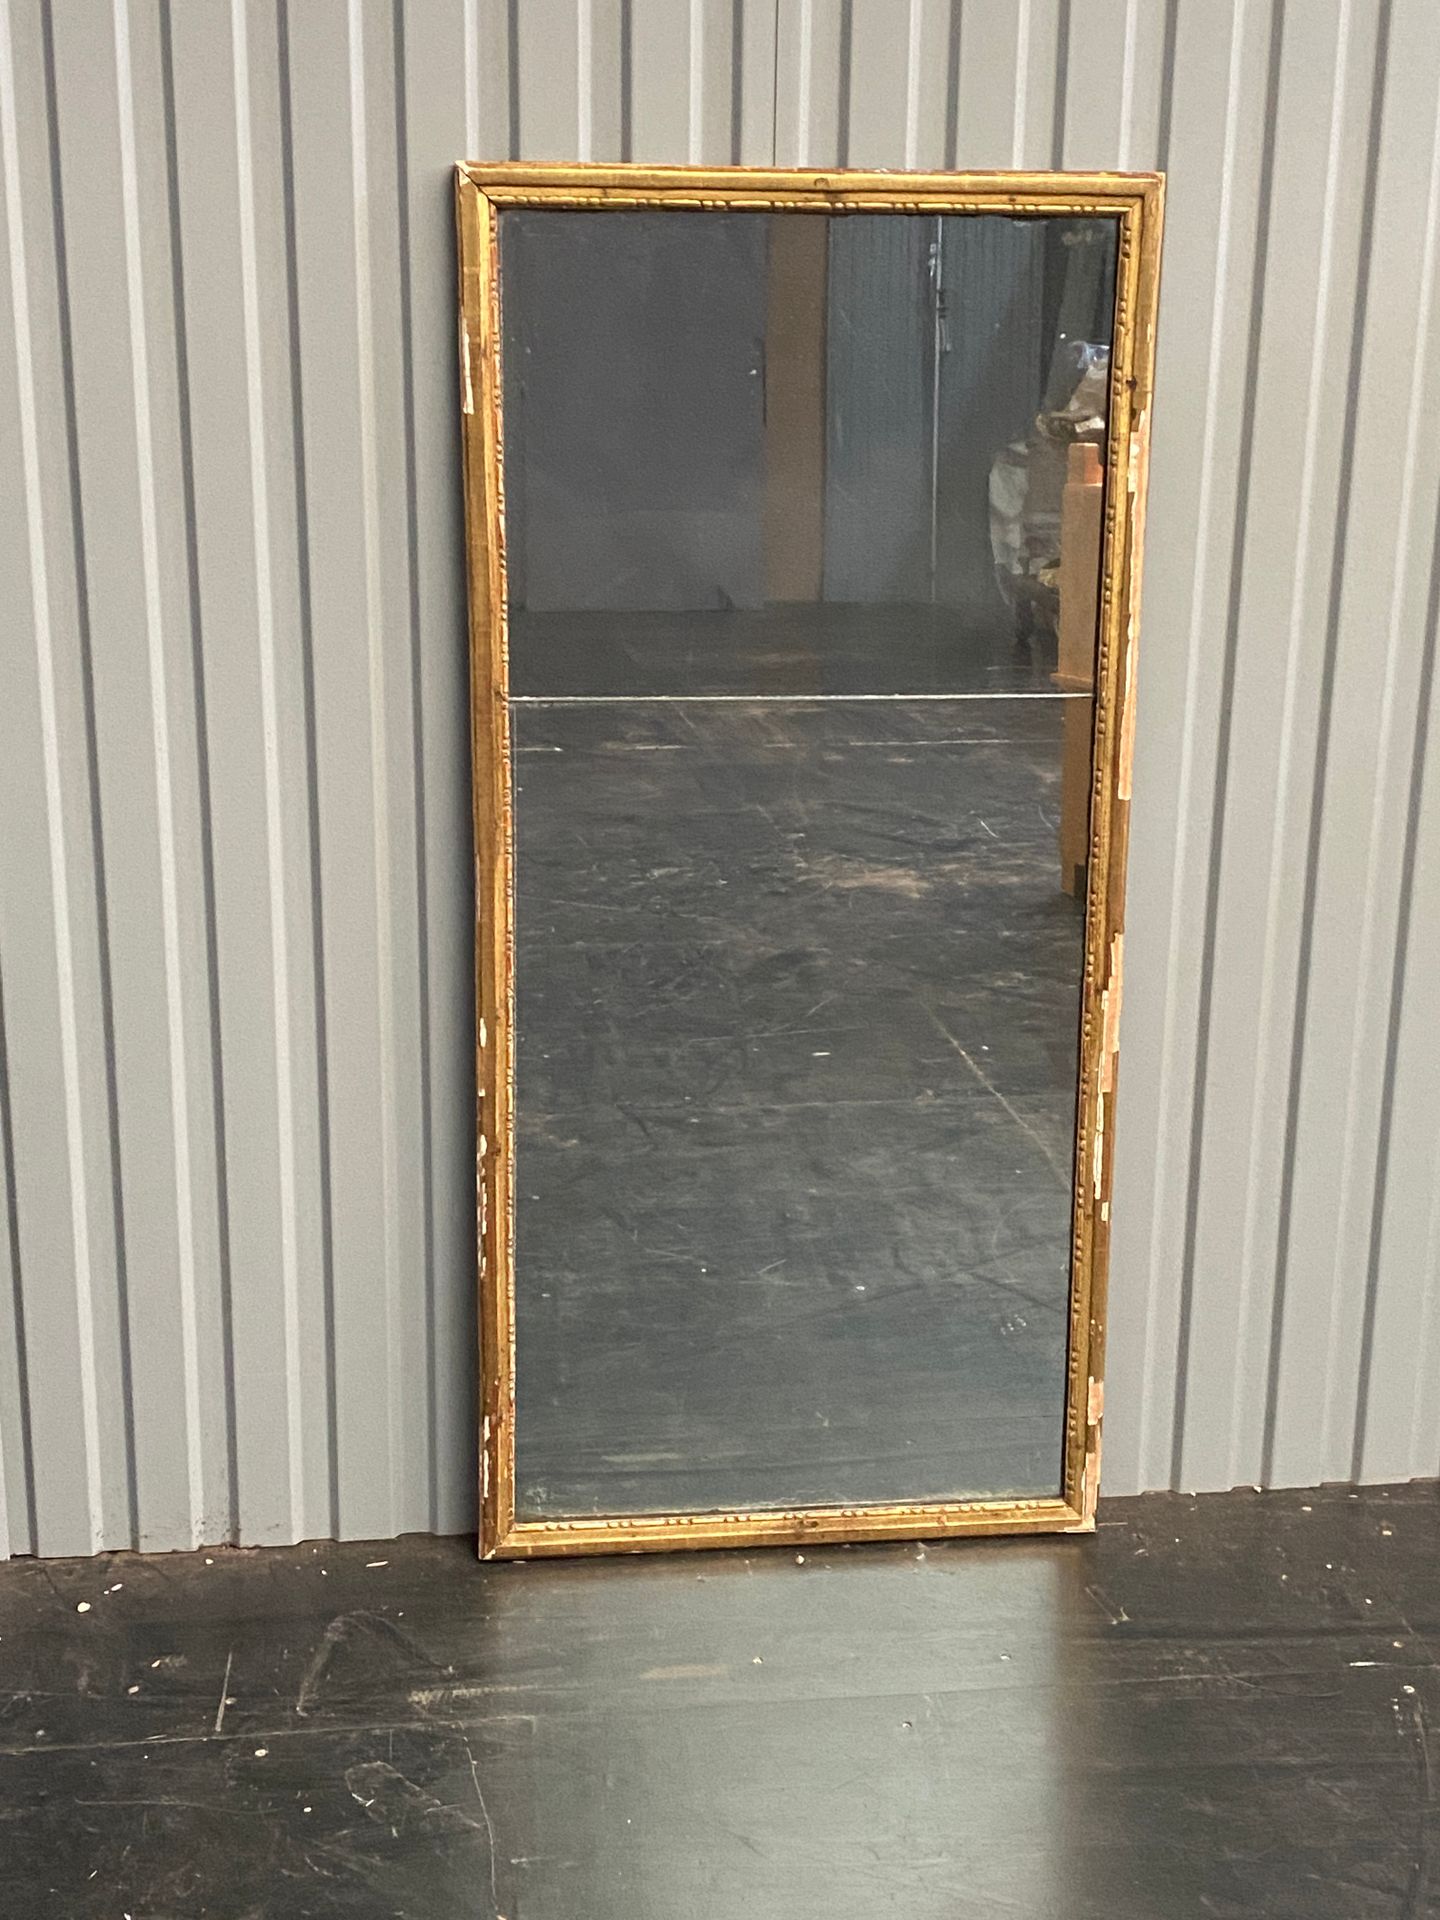 Null Specchio rettangolare con cornice dorata

Incidenti

H : 136 - W : 64 cm